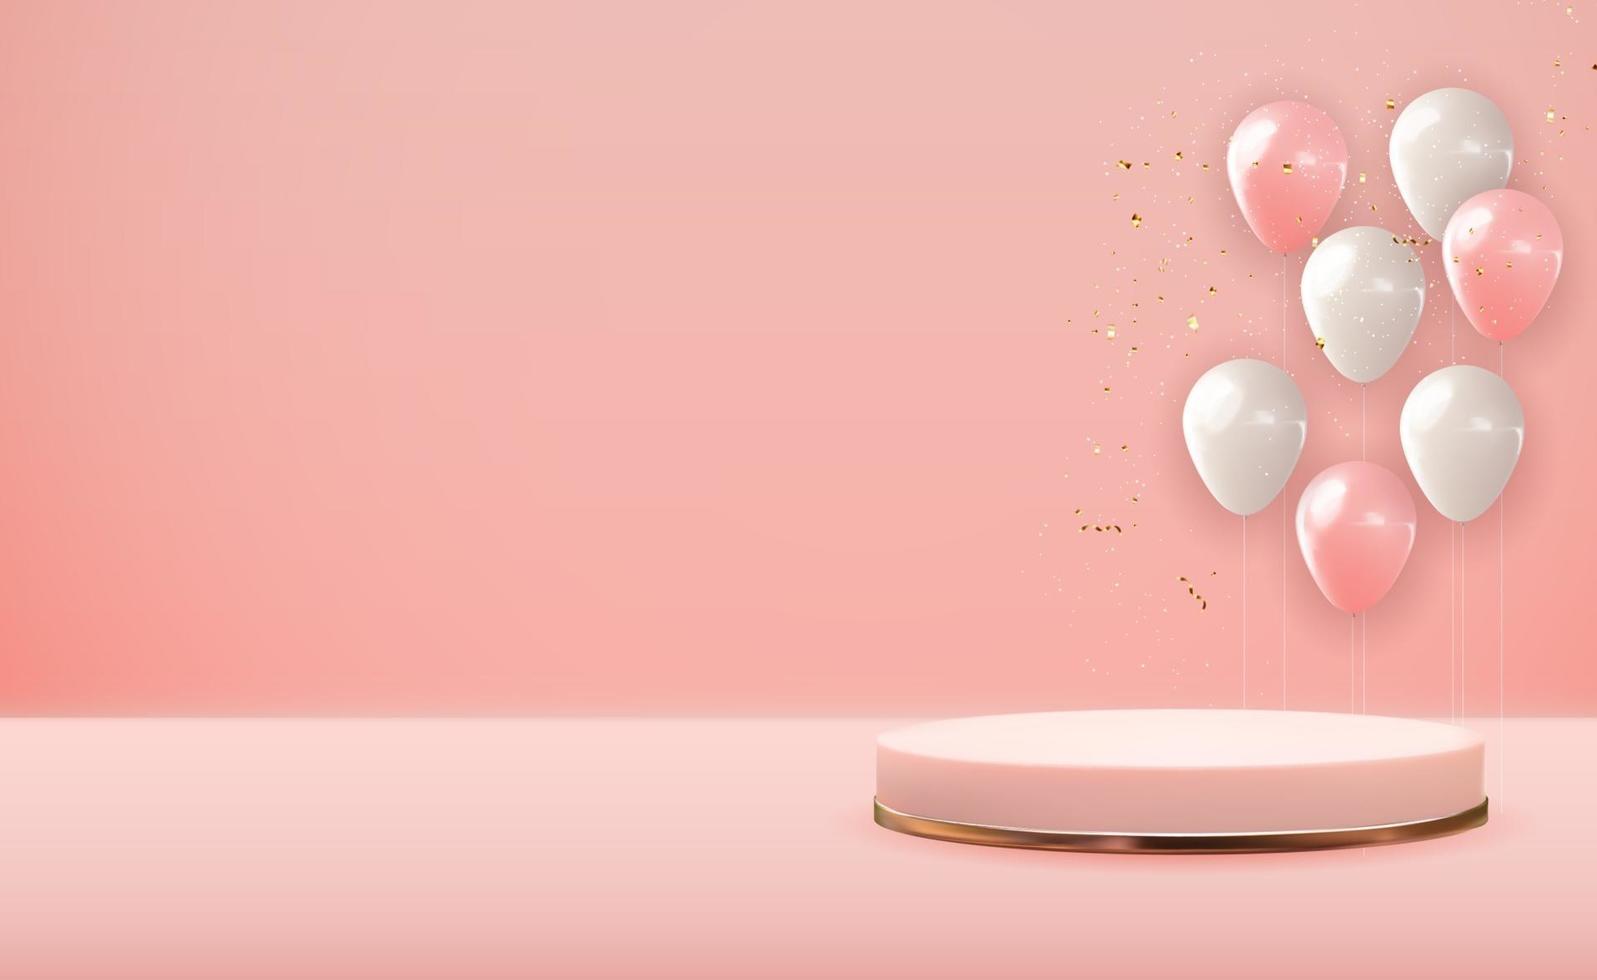 piedistallo realistico in oro rosa 3d su sfondo naturale pastello rosa con palloncini festa. display podio vuoto alla moda per la presentazione di prodotti cosmetici, rivista di moda. copia spazio illustrazione vettoriale eps10